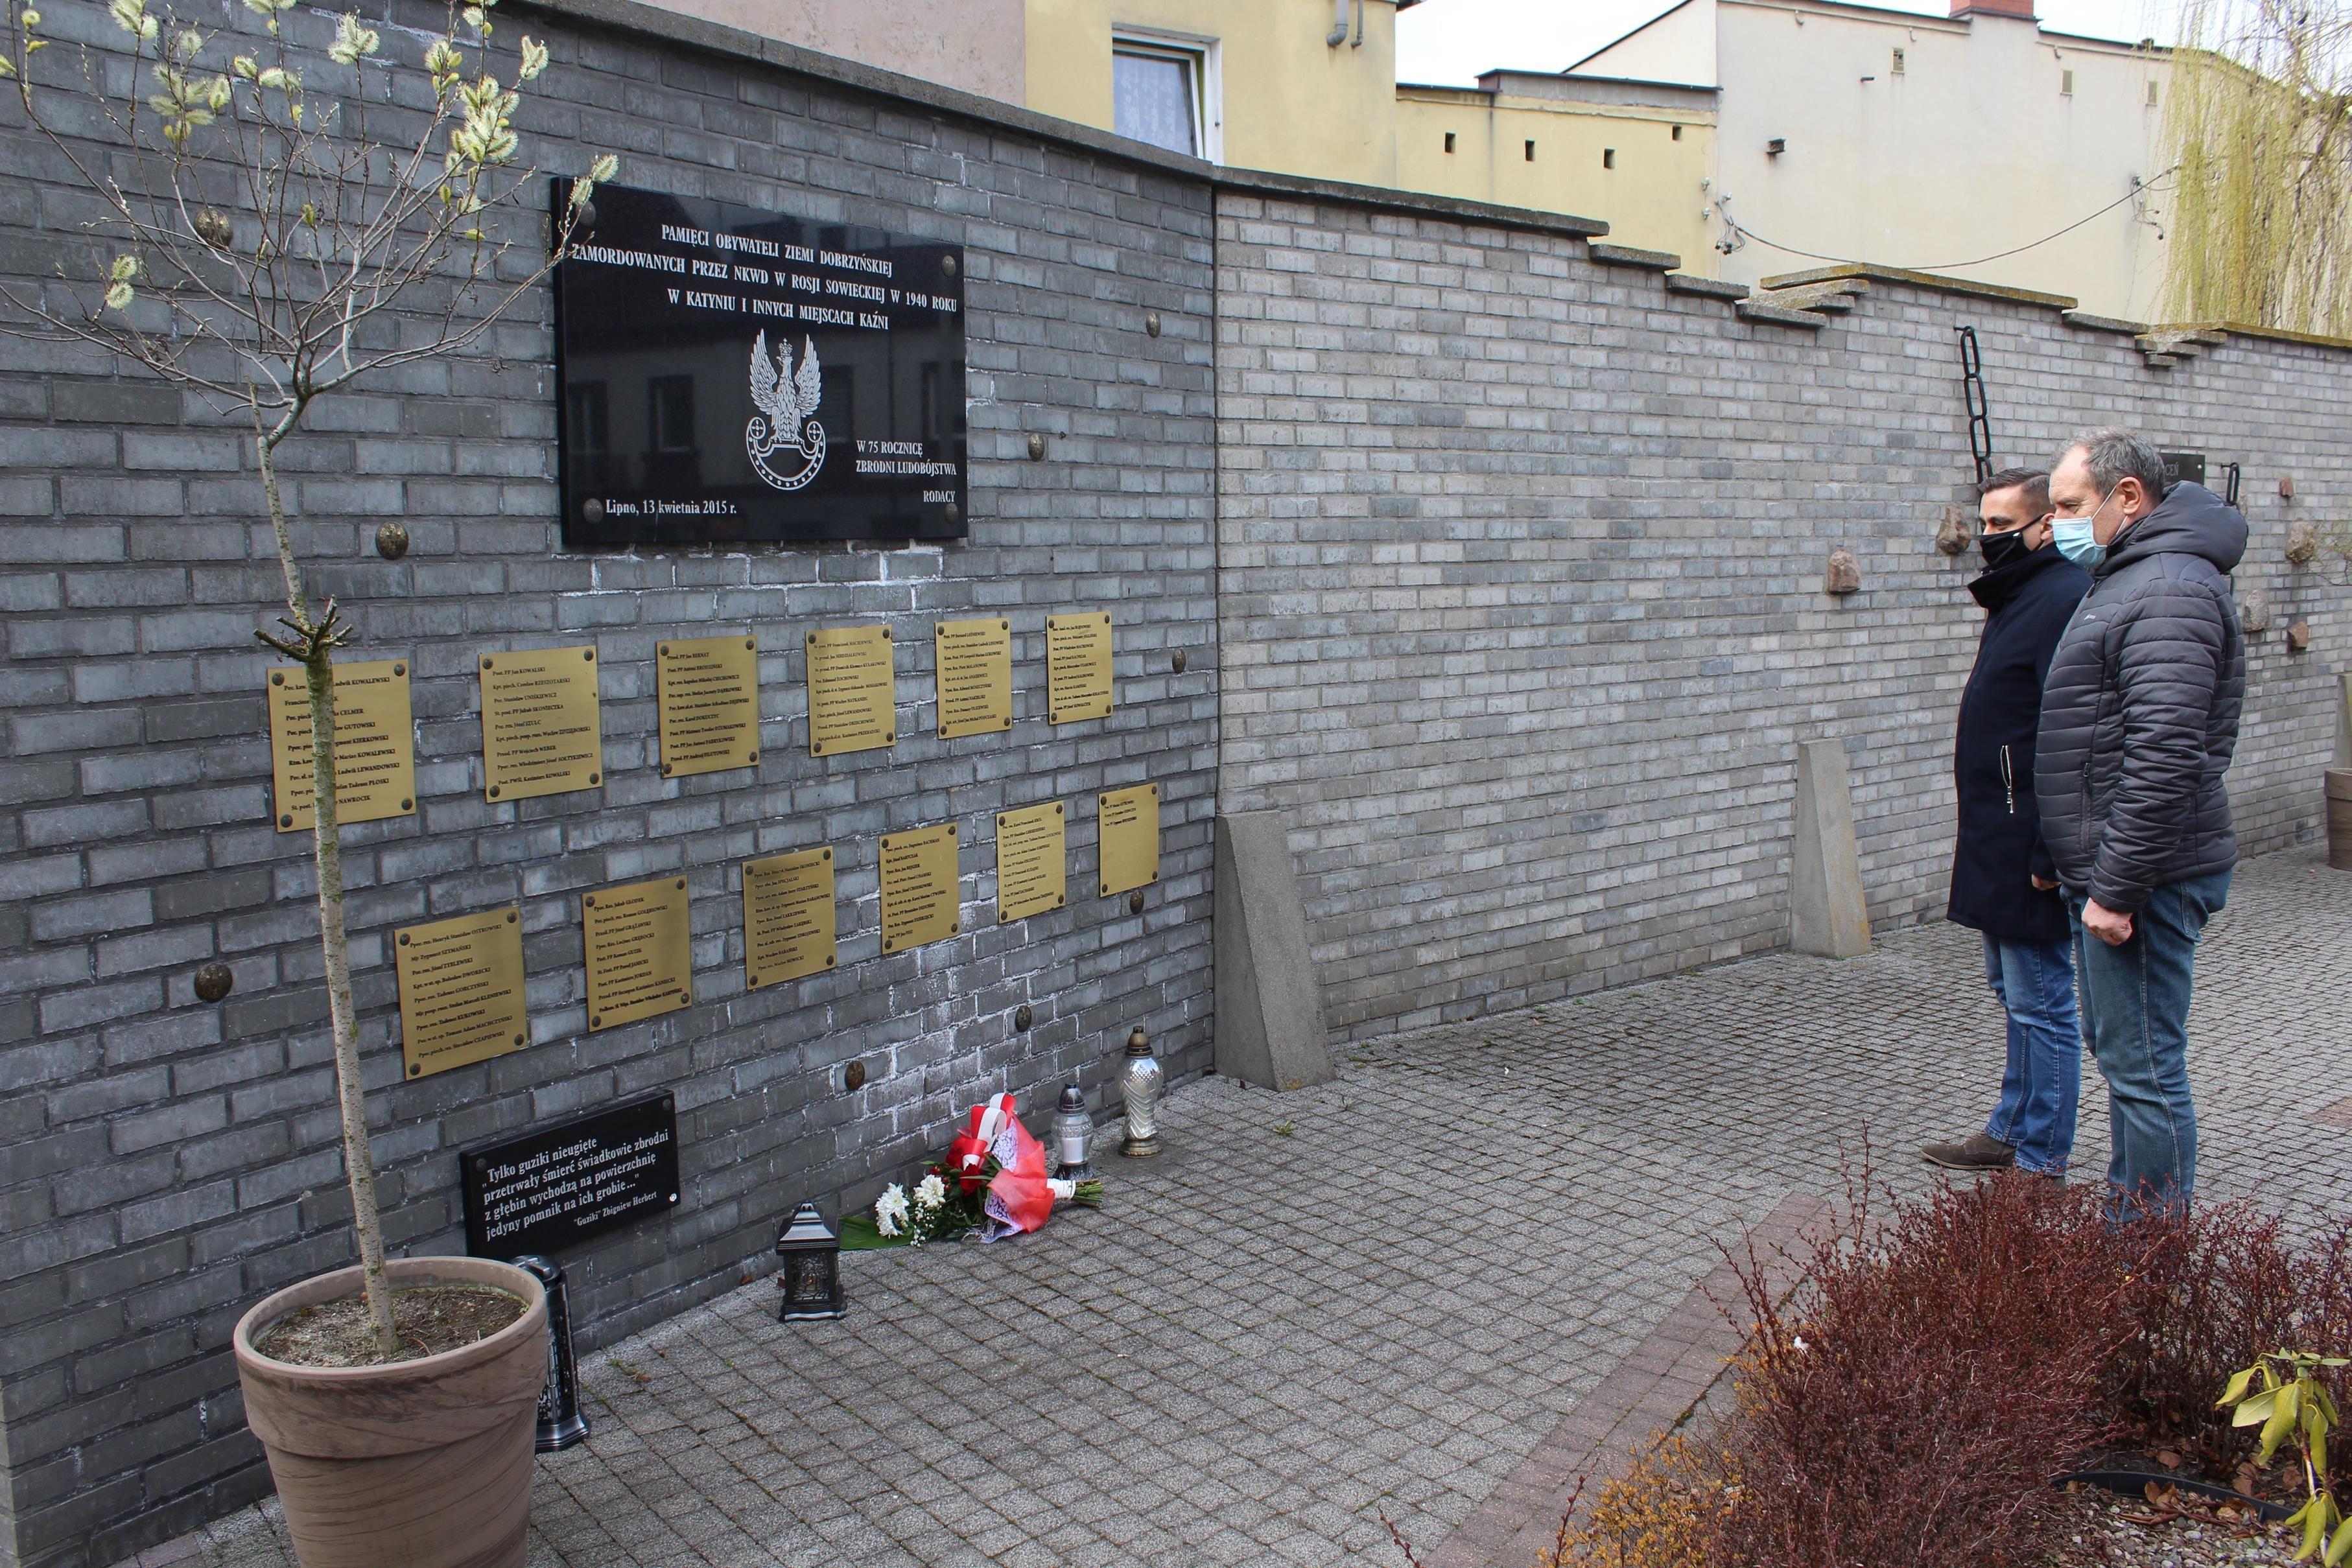 Burmistrz Miasta Lipna Paweł Banasik oraz radny Sebastian Lewandowski składają kwiaty pod tablicą upamiętniającą ofiary zbrodni katyńskiej pochodzące z terenów ziemi dobrzyńskiej - kliknięcie spowoduje powiększenie
